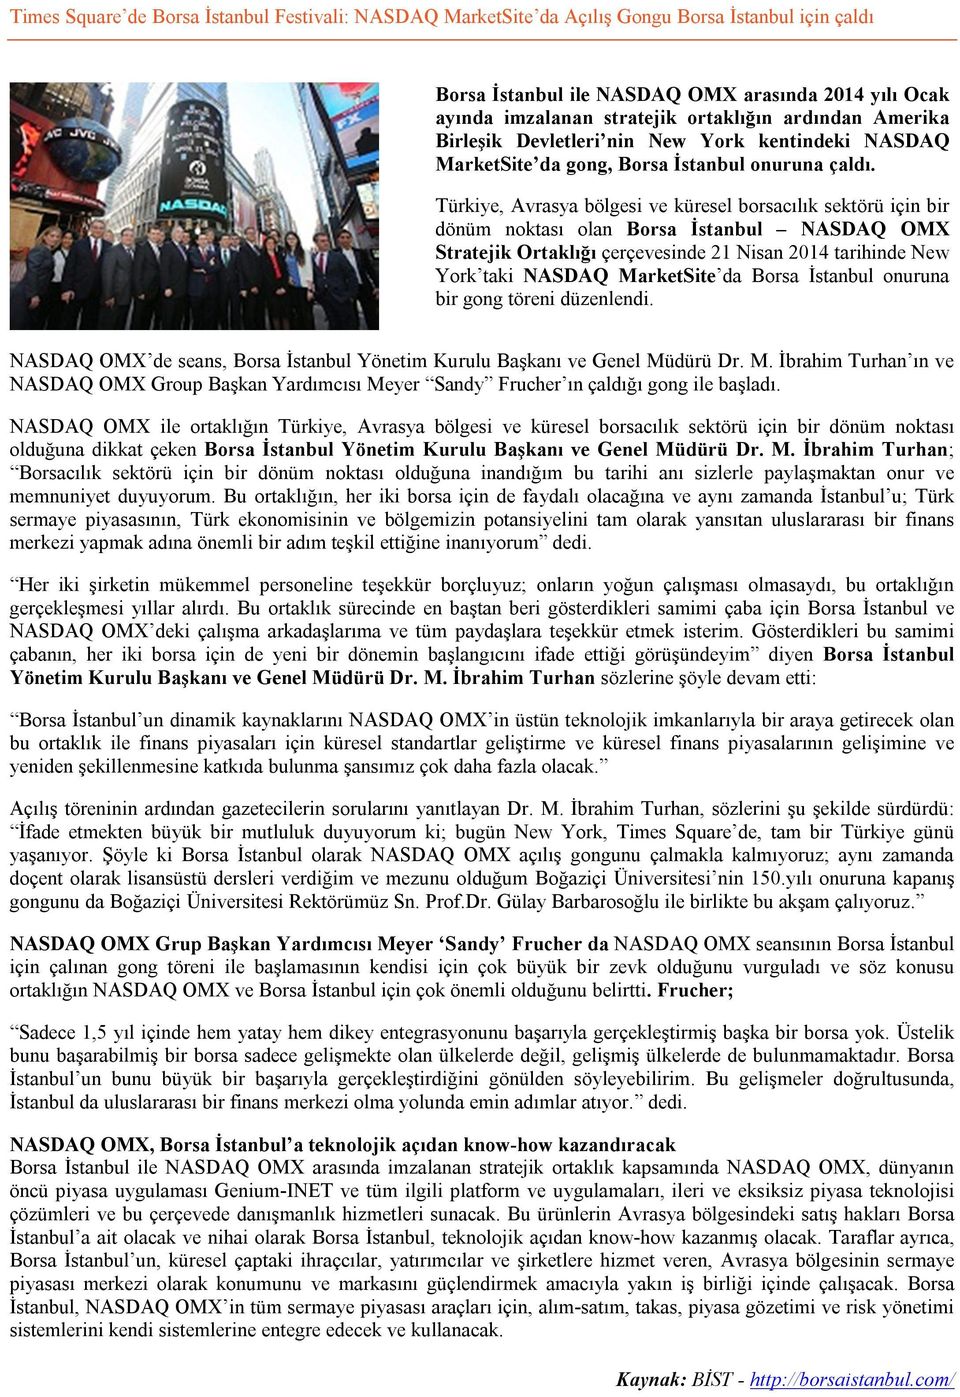 Türkiye, Avrasya bölgesi ve küresel borsacılık sektörü için bir dönüm noktası olan Borsa İstanbul NASDAQ OMX Stratejik Ortaklığı çerçevesinde 21 Nisan 2014 tarihinde New York taki NASDAQ MarketSite